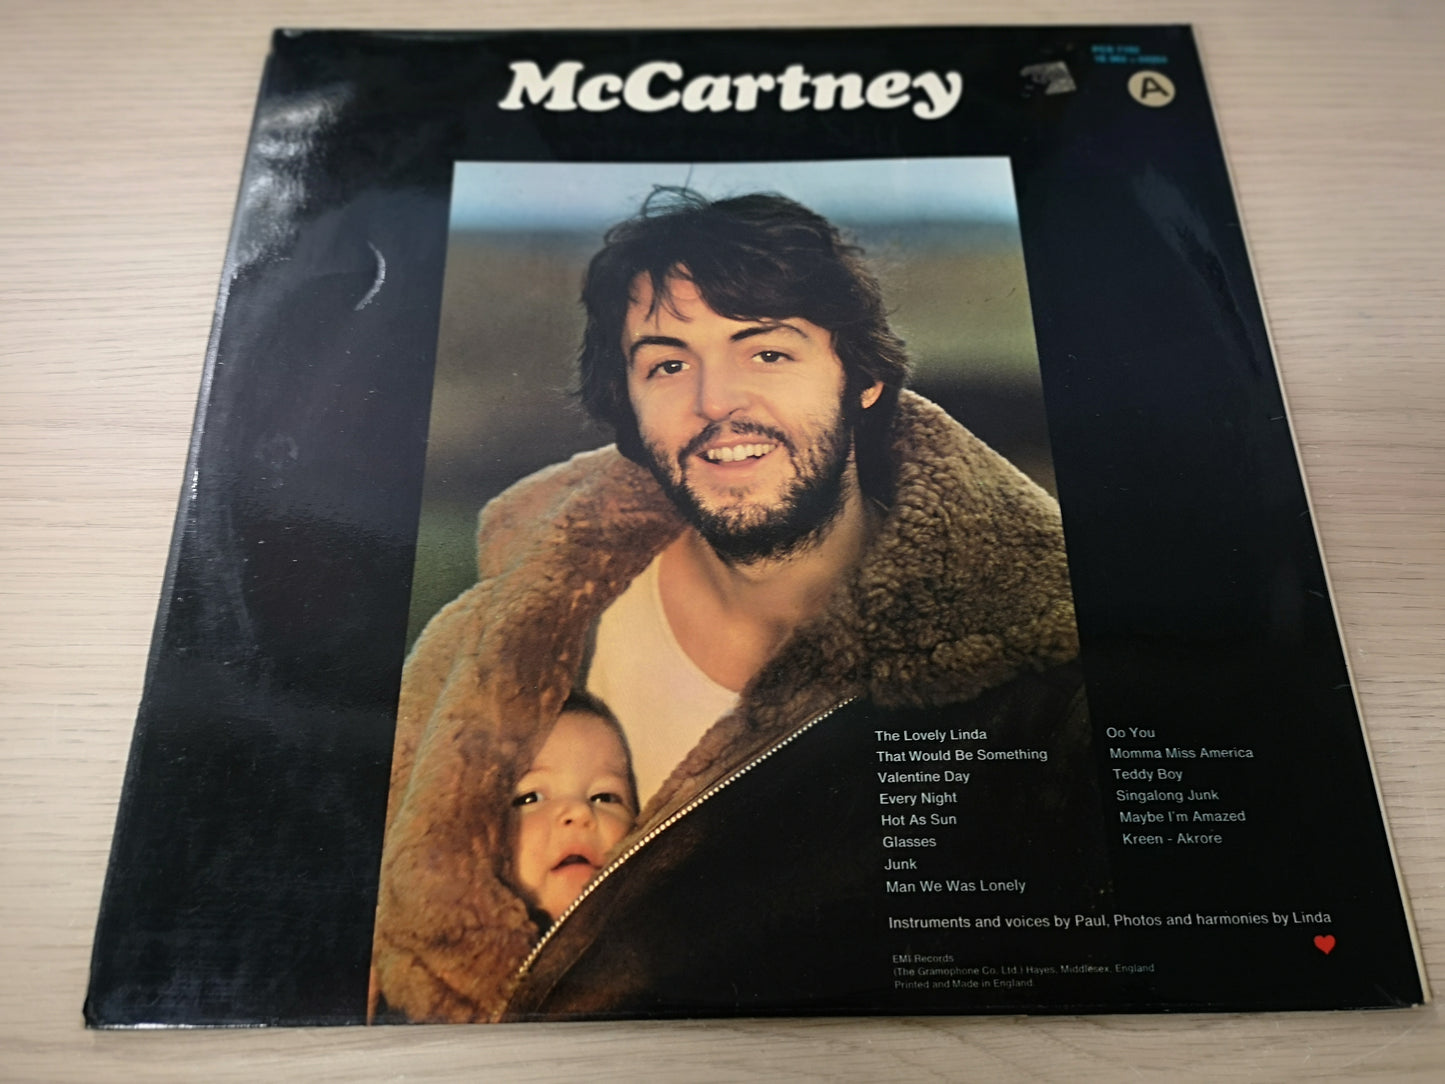 Paul McCartney "McCartney" Orig UK 1970 EX/EX